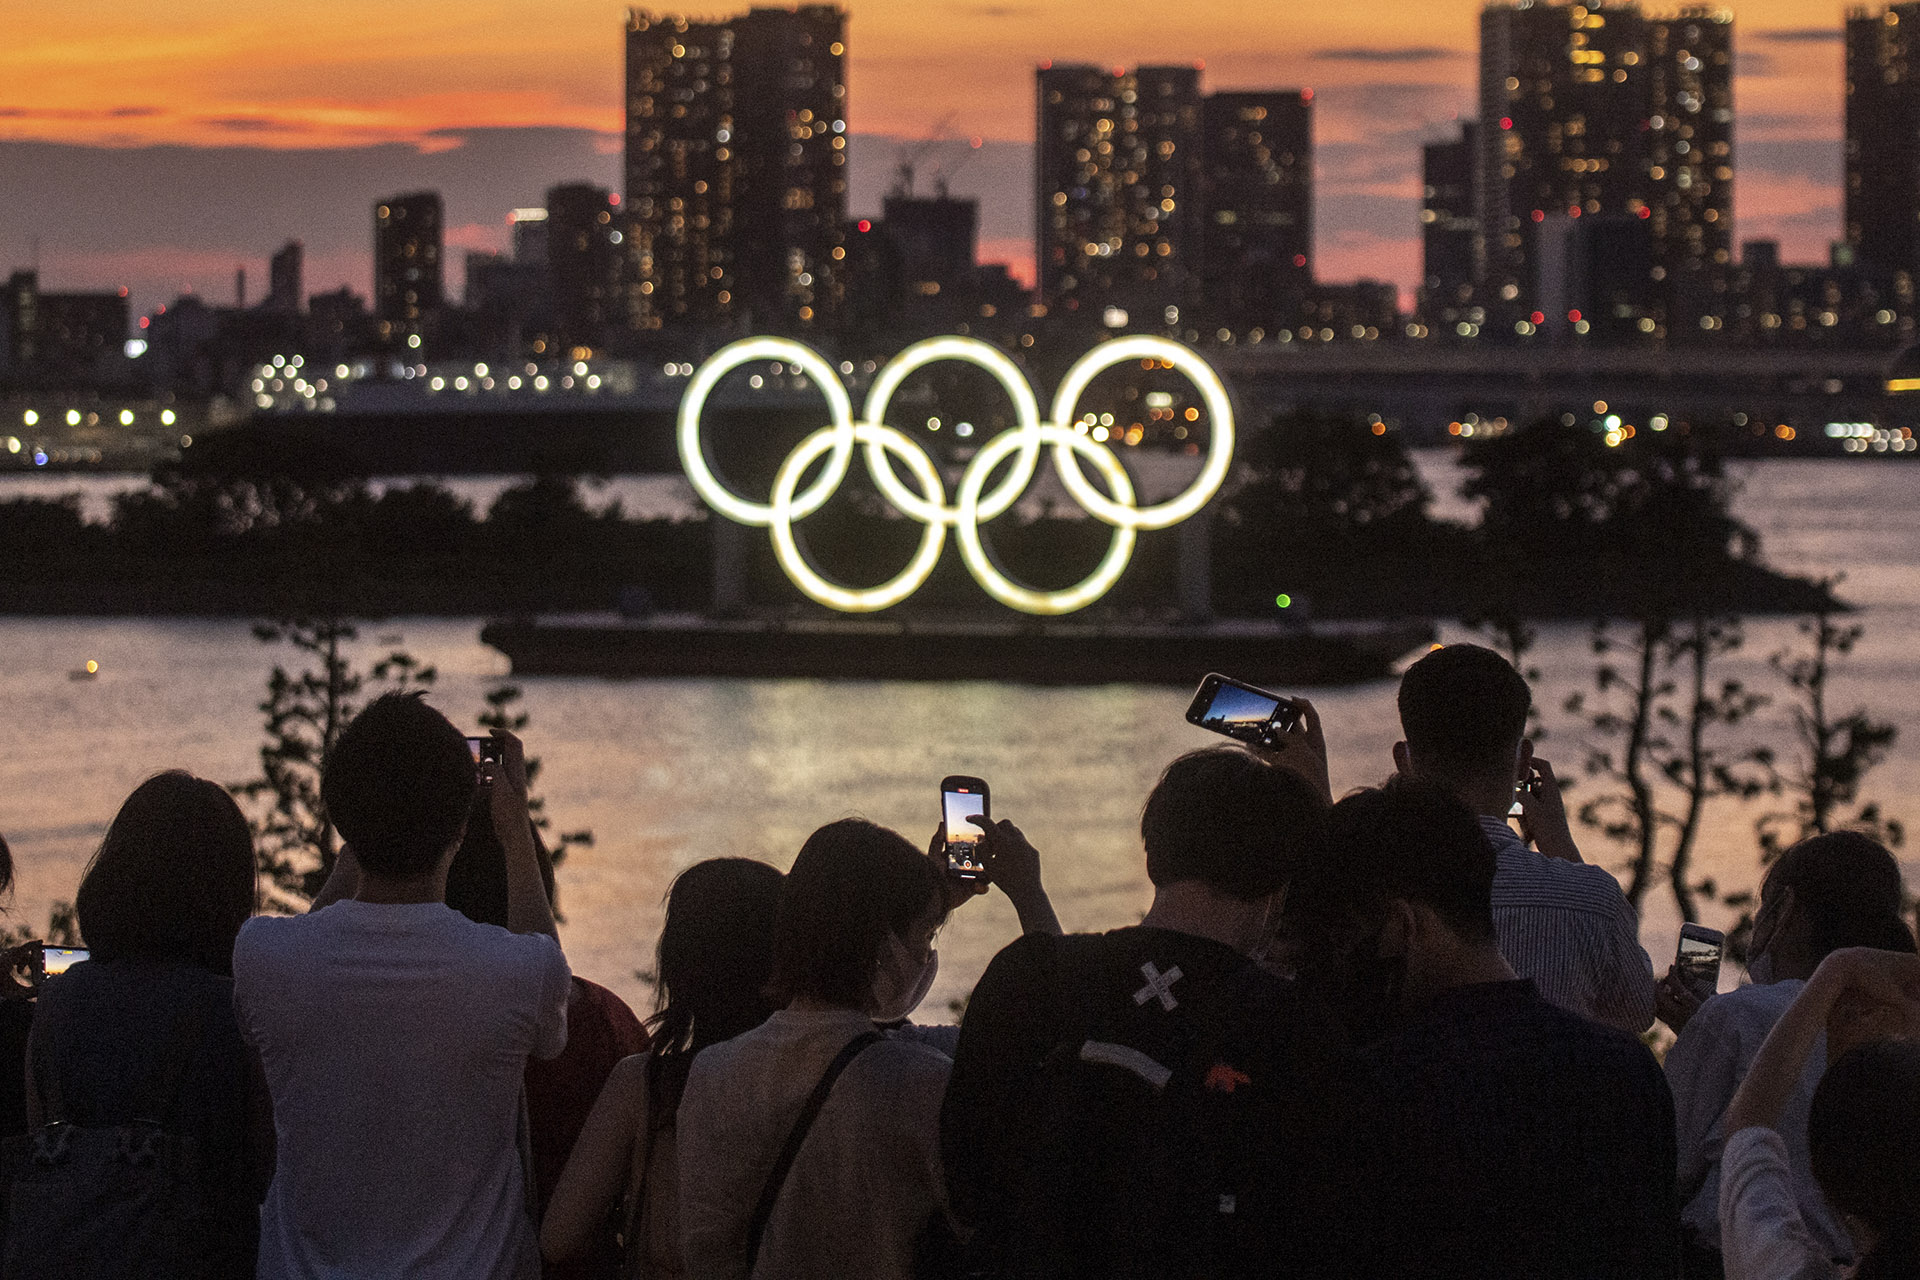 Itt vannak az első képek a tokiói olimpiáról